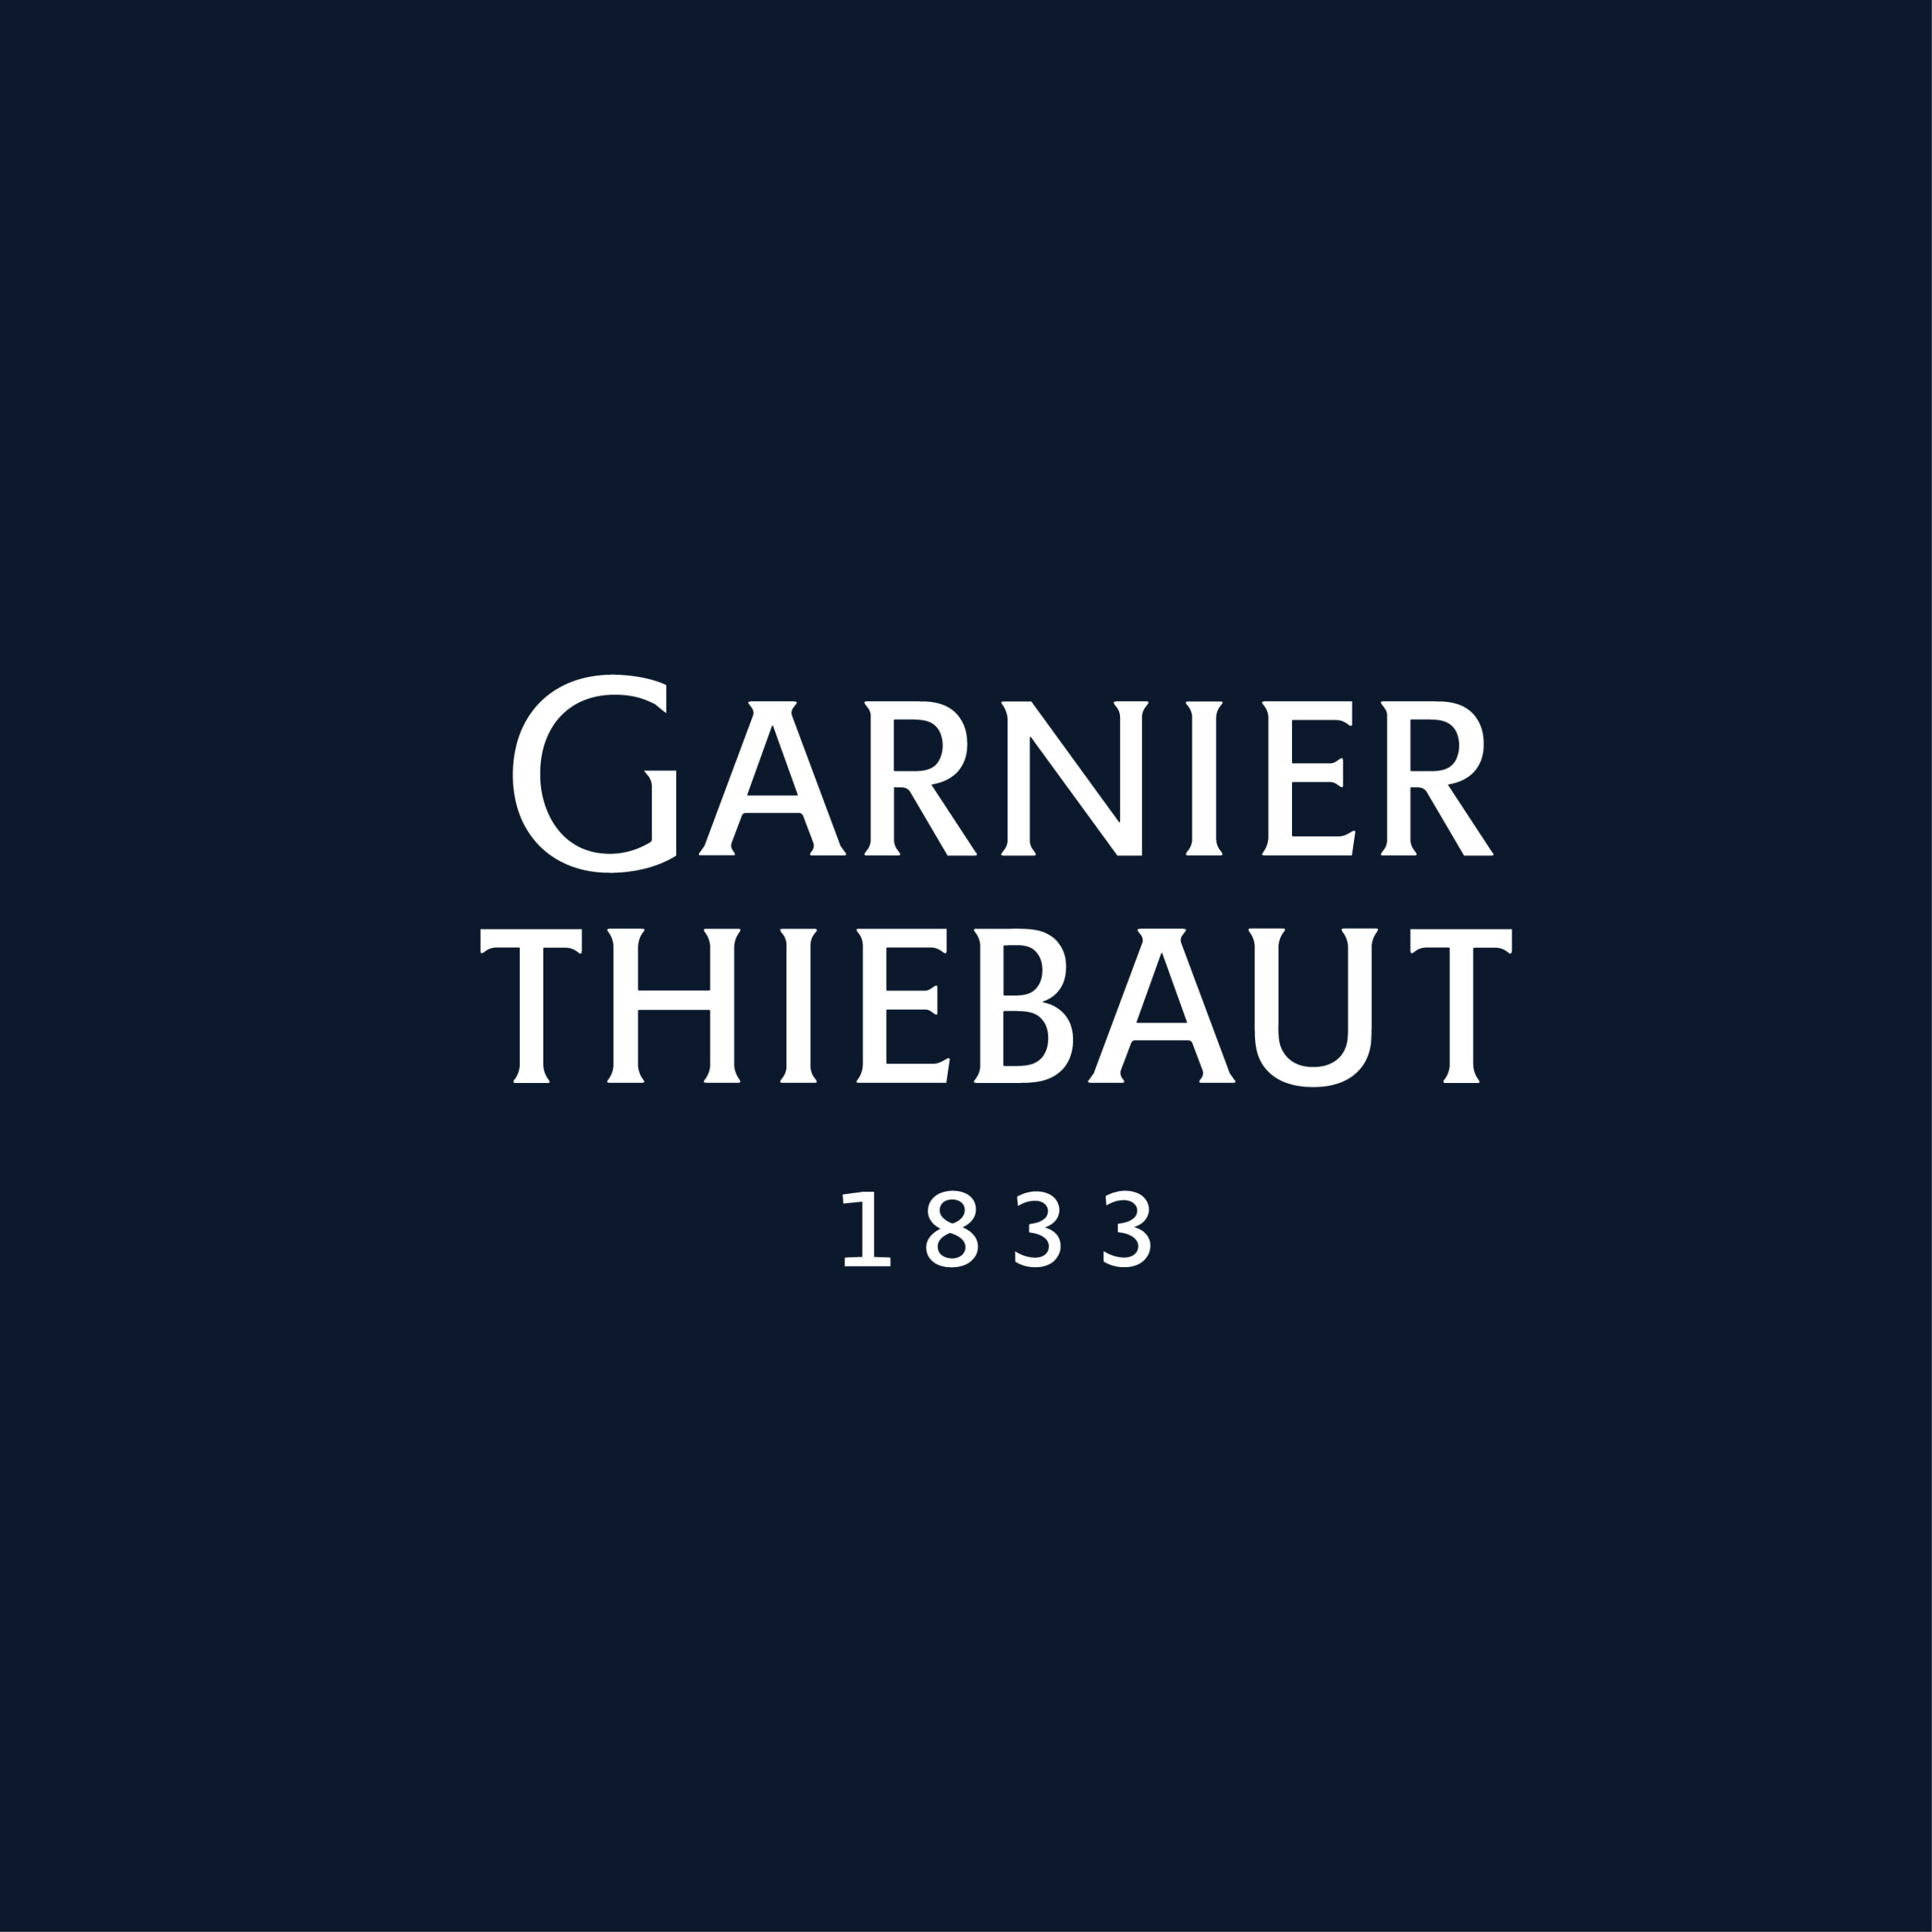 Garnier Thiebaut logo fond bleu